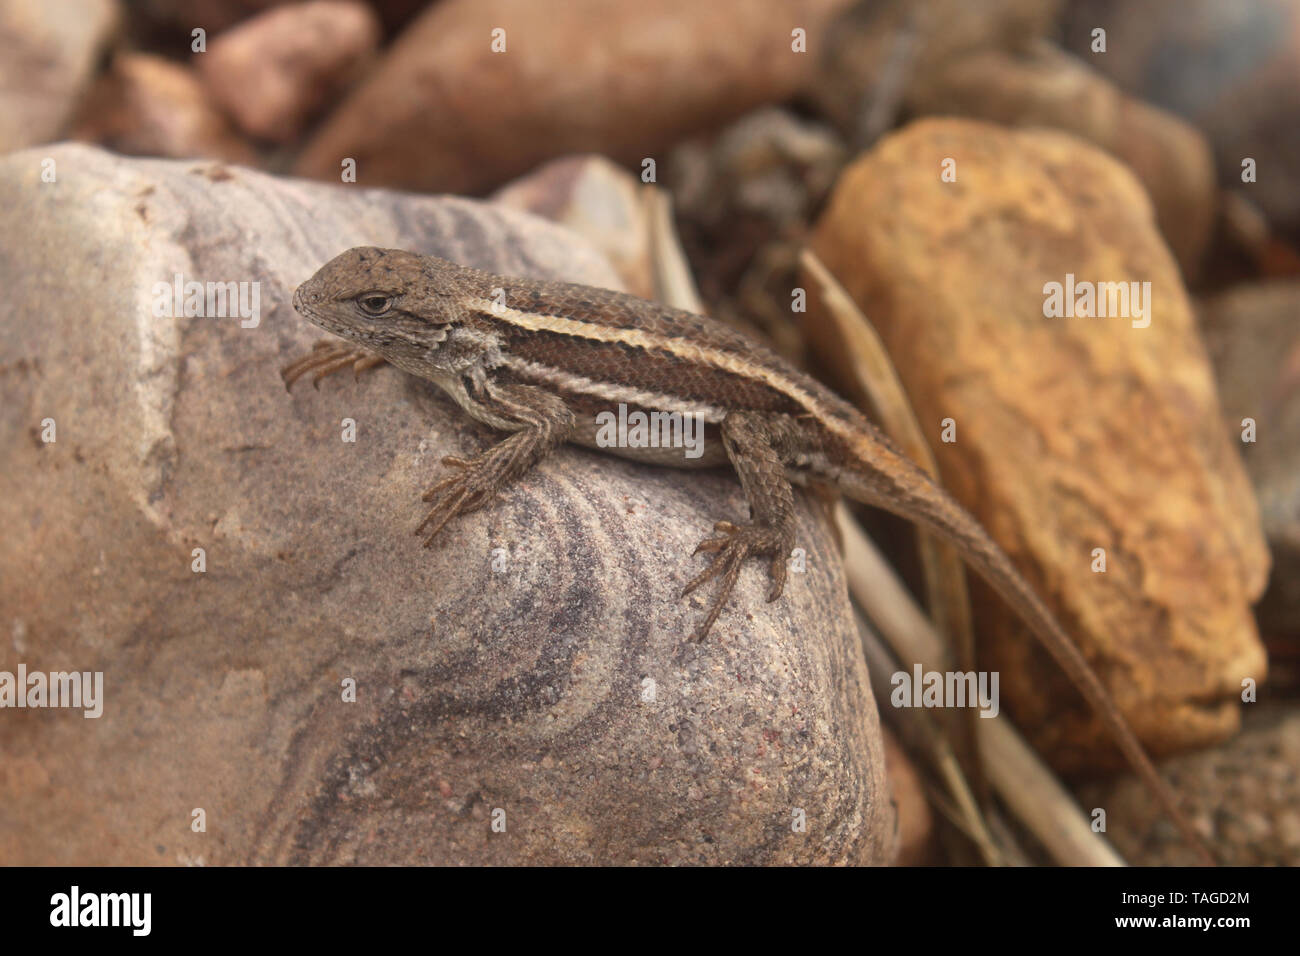 Striped Plateau Fence Lizard (Sceloporus virgatus) Stock Photo